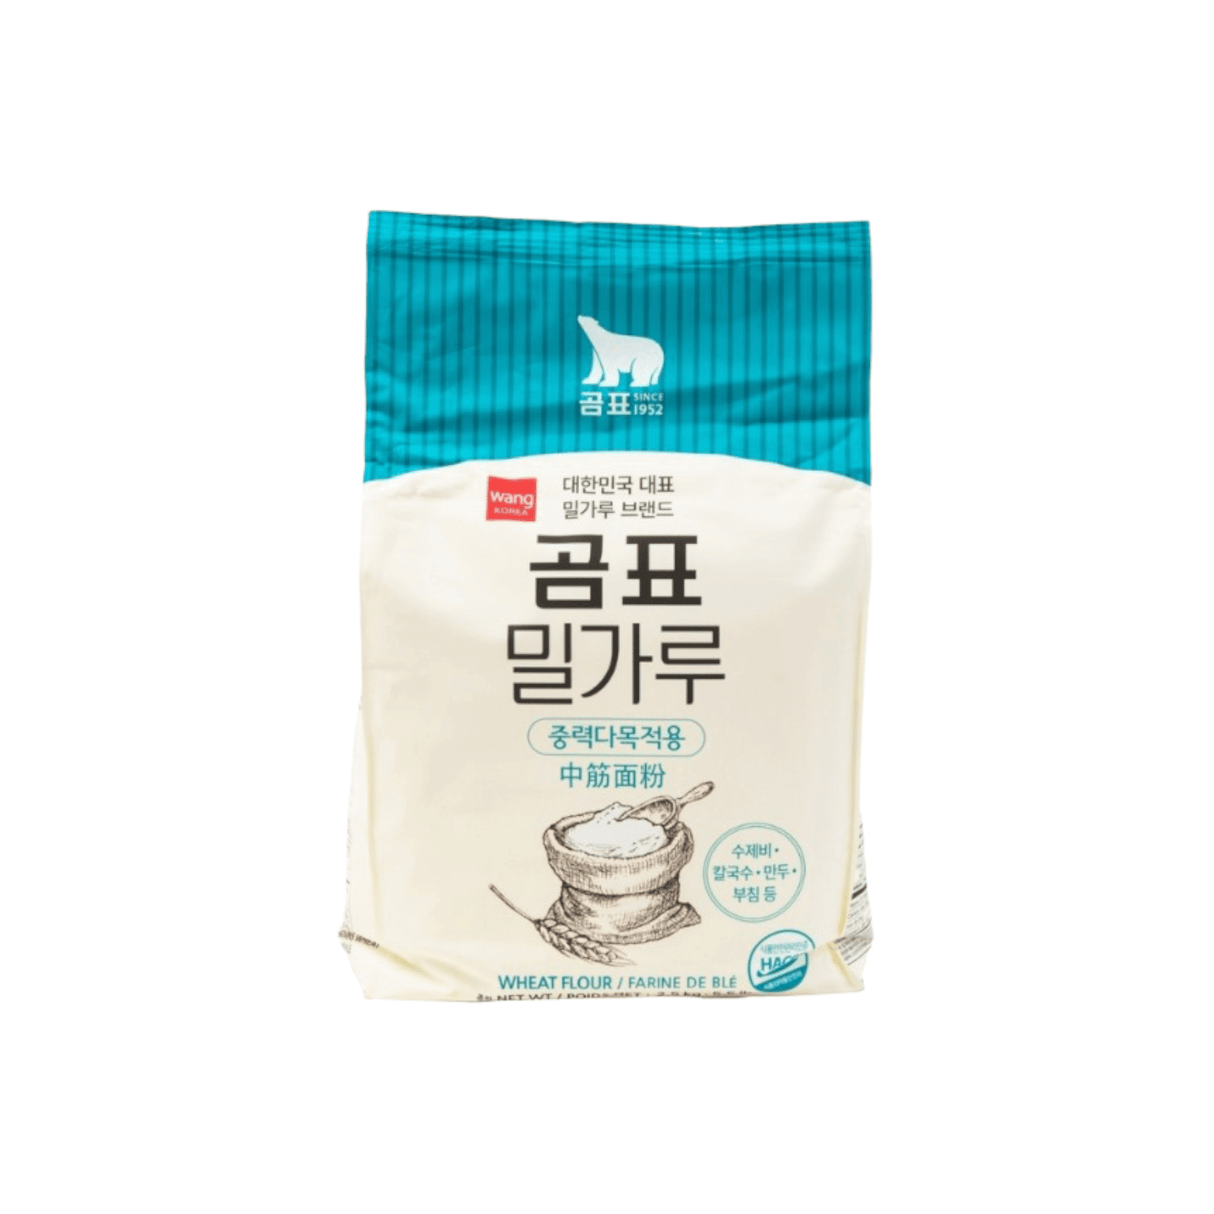 Wang Korea Wheat Flour